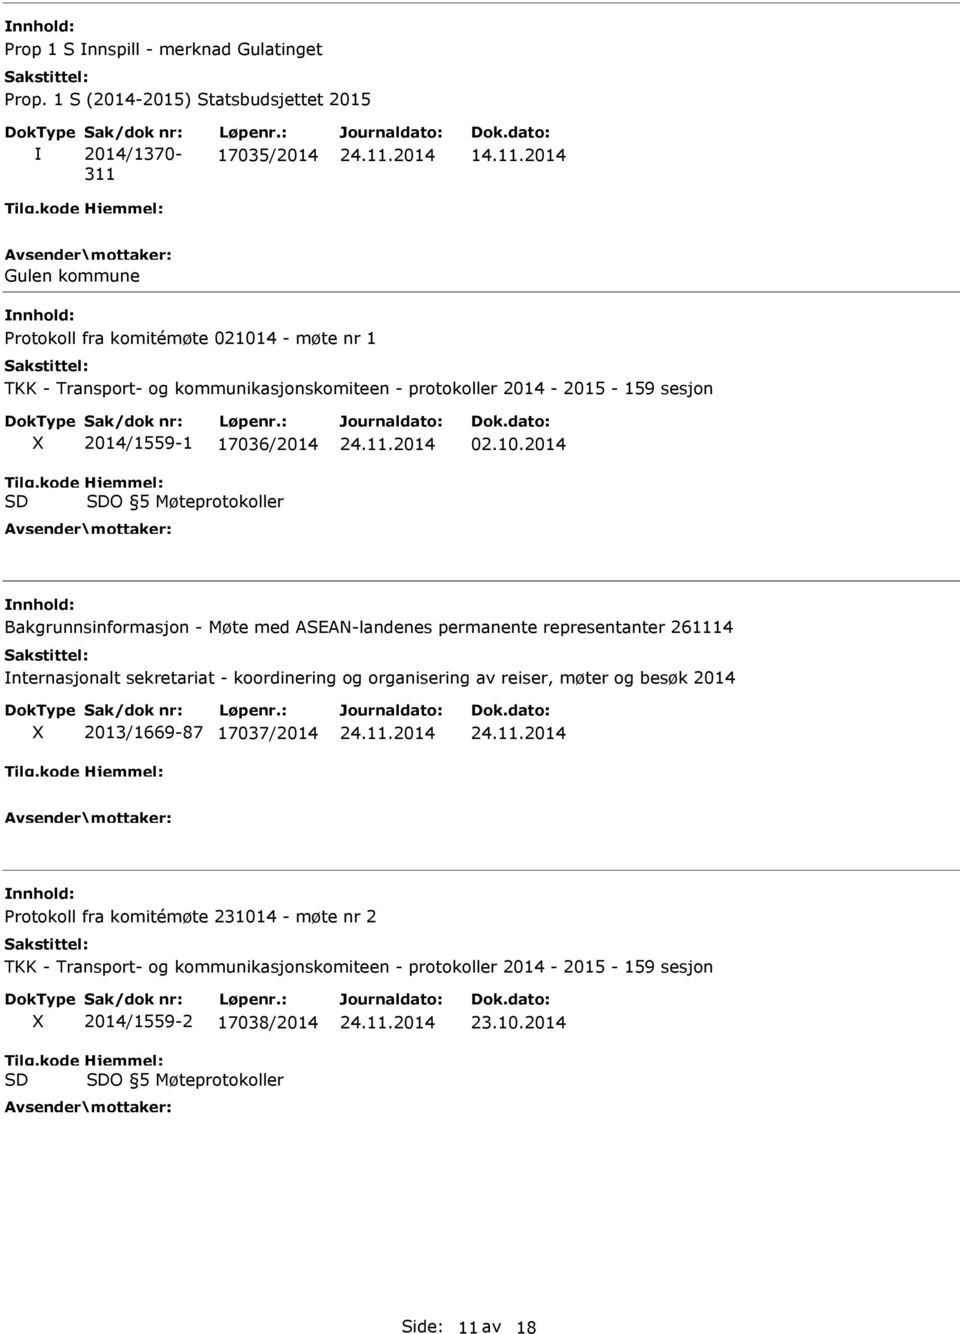 2014 Gulen kommune Protokoll fra komitémøte 021014 - møte nr 1 TKK - Transport- og kommunikasjonskomiteen - protokoller 2014-2015 - 159 sesjon 2014/1559-1 17036/2014 O 5